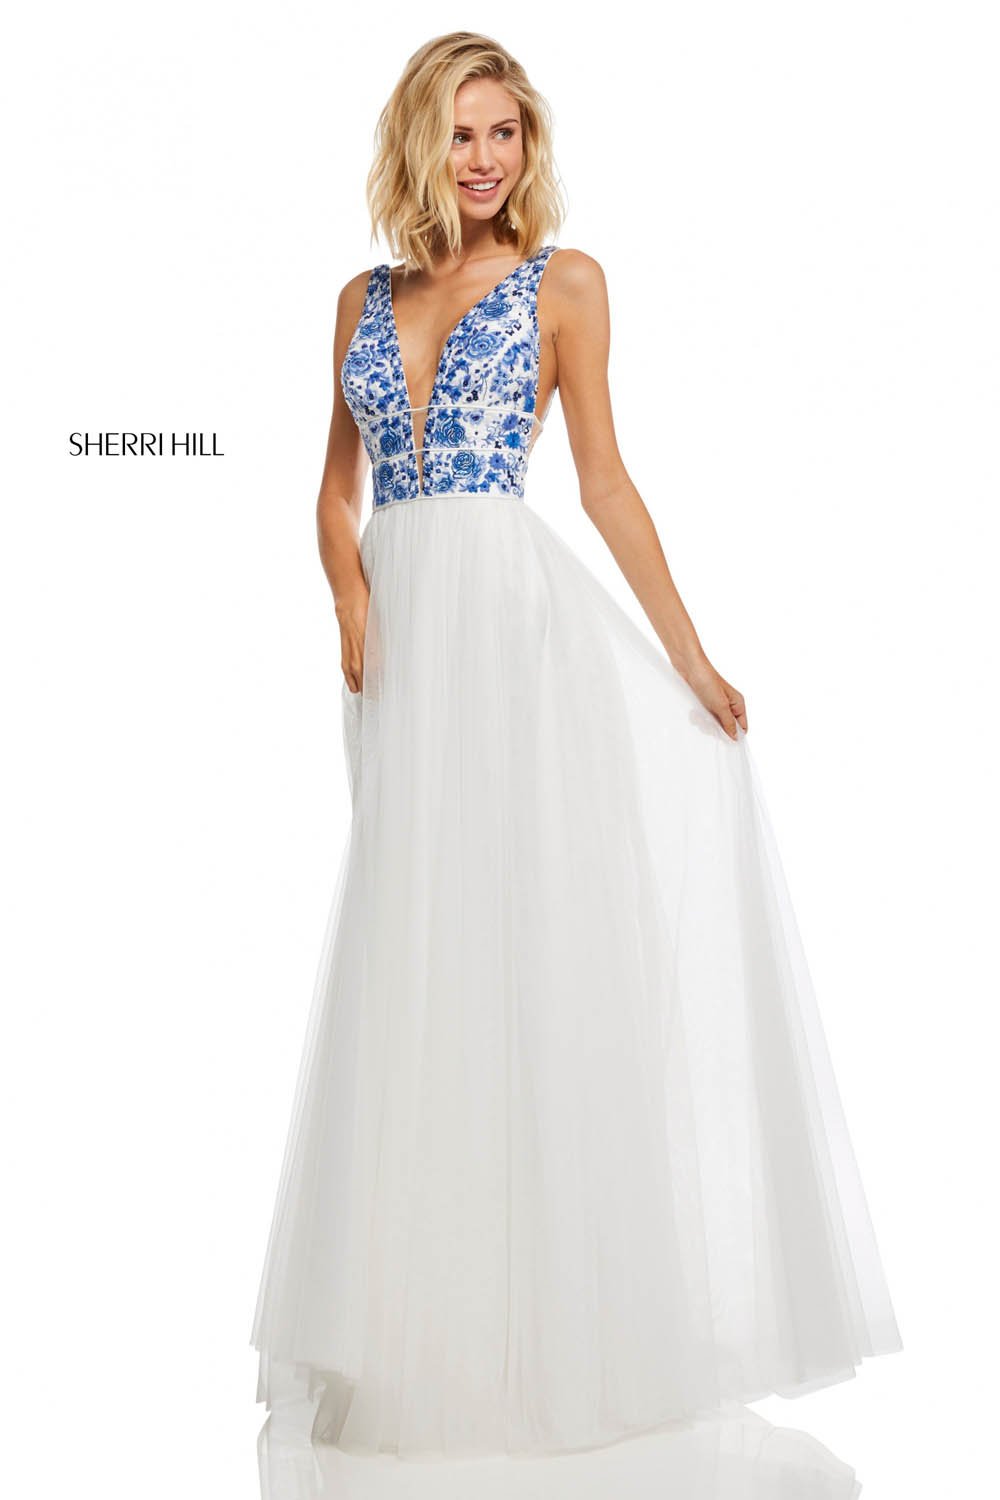 Sherri Hill 52672 Dress - Formal ...